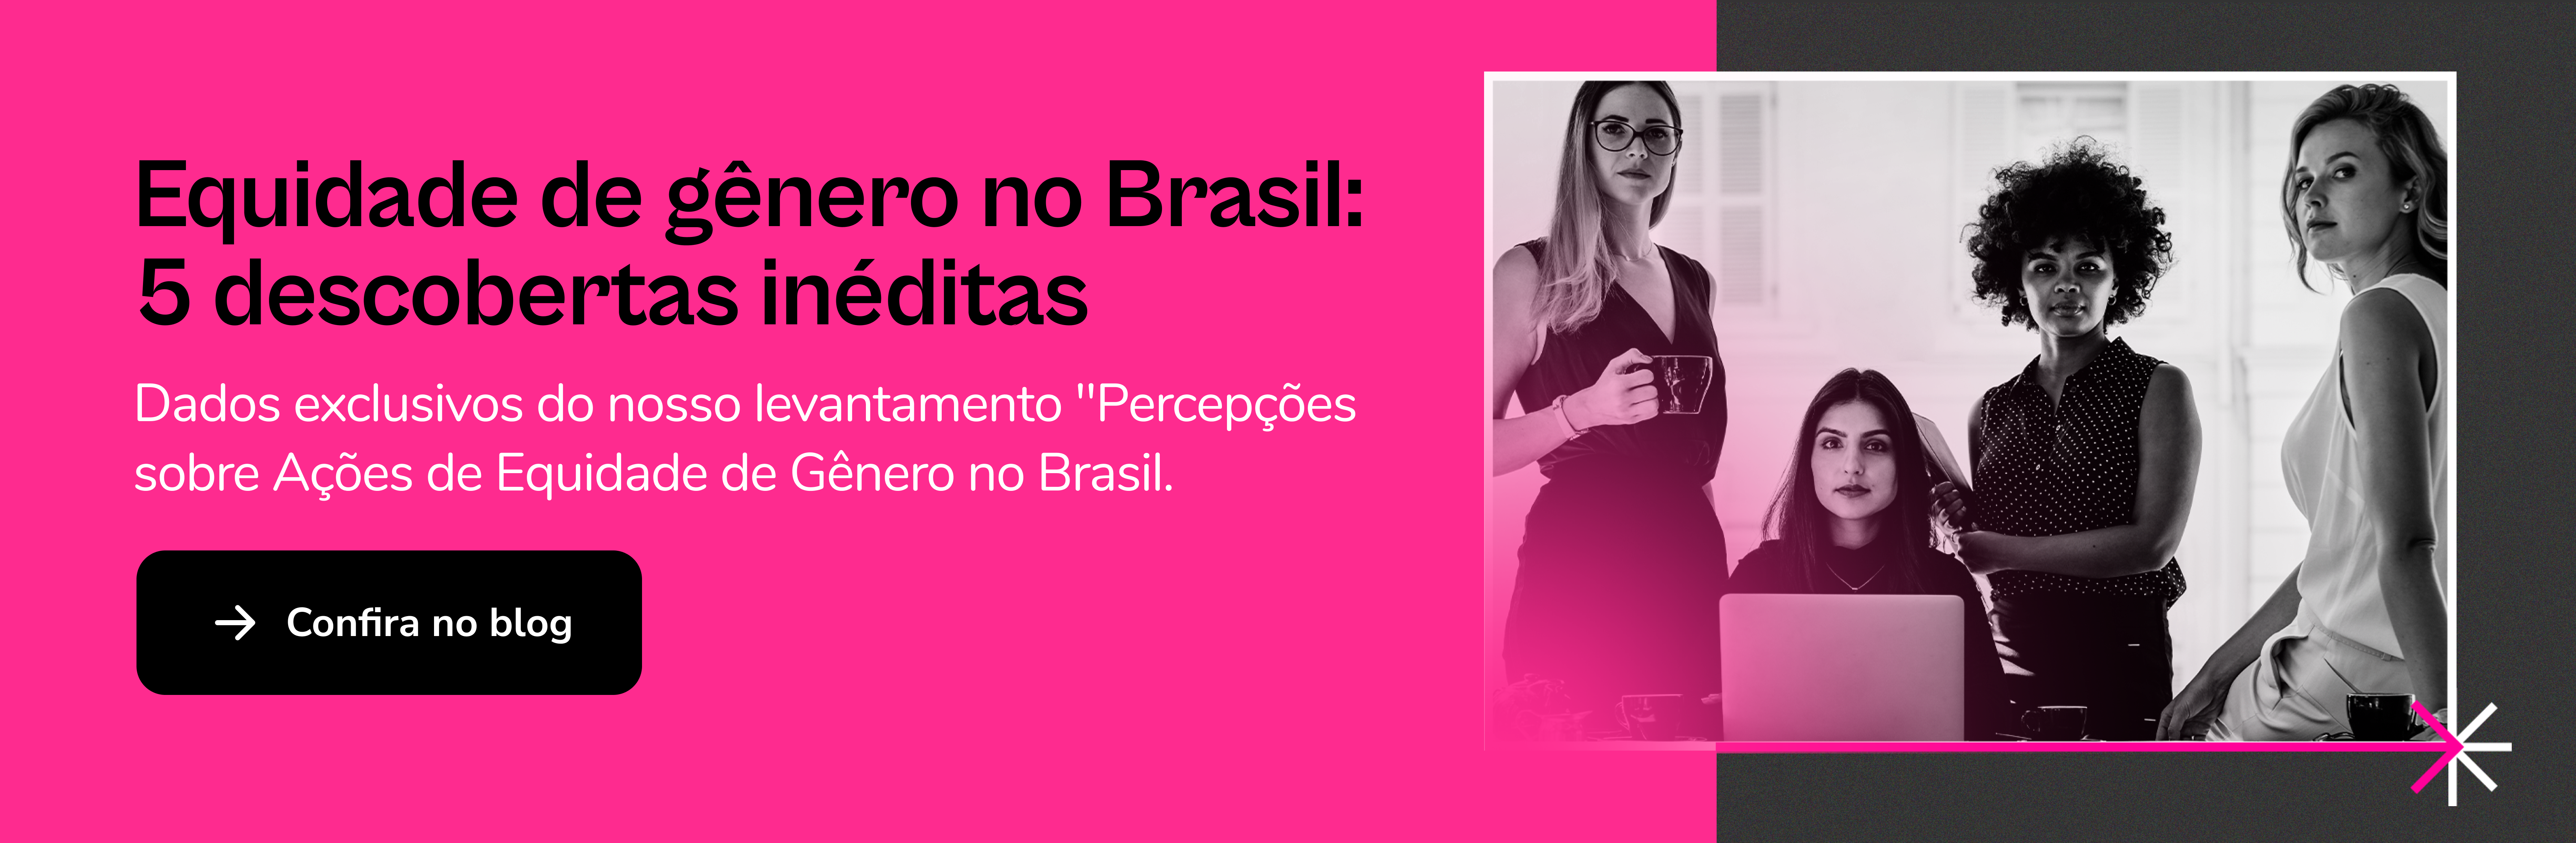 Equidade de gênero no Brasil